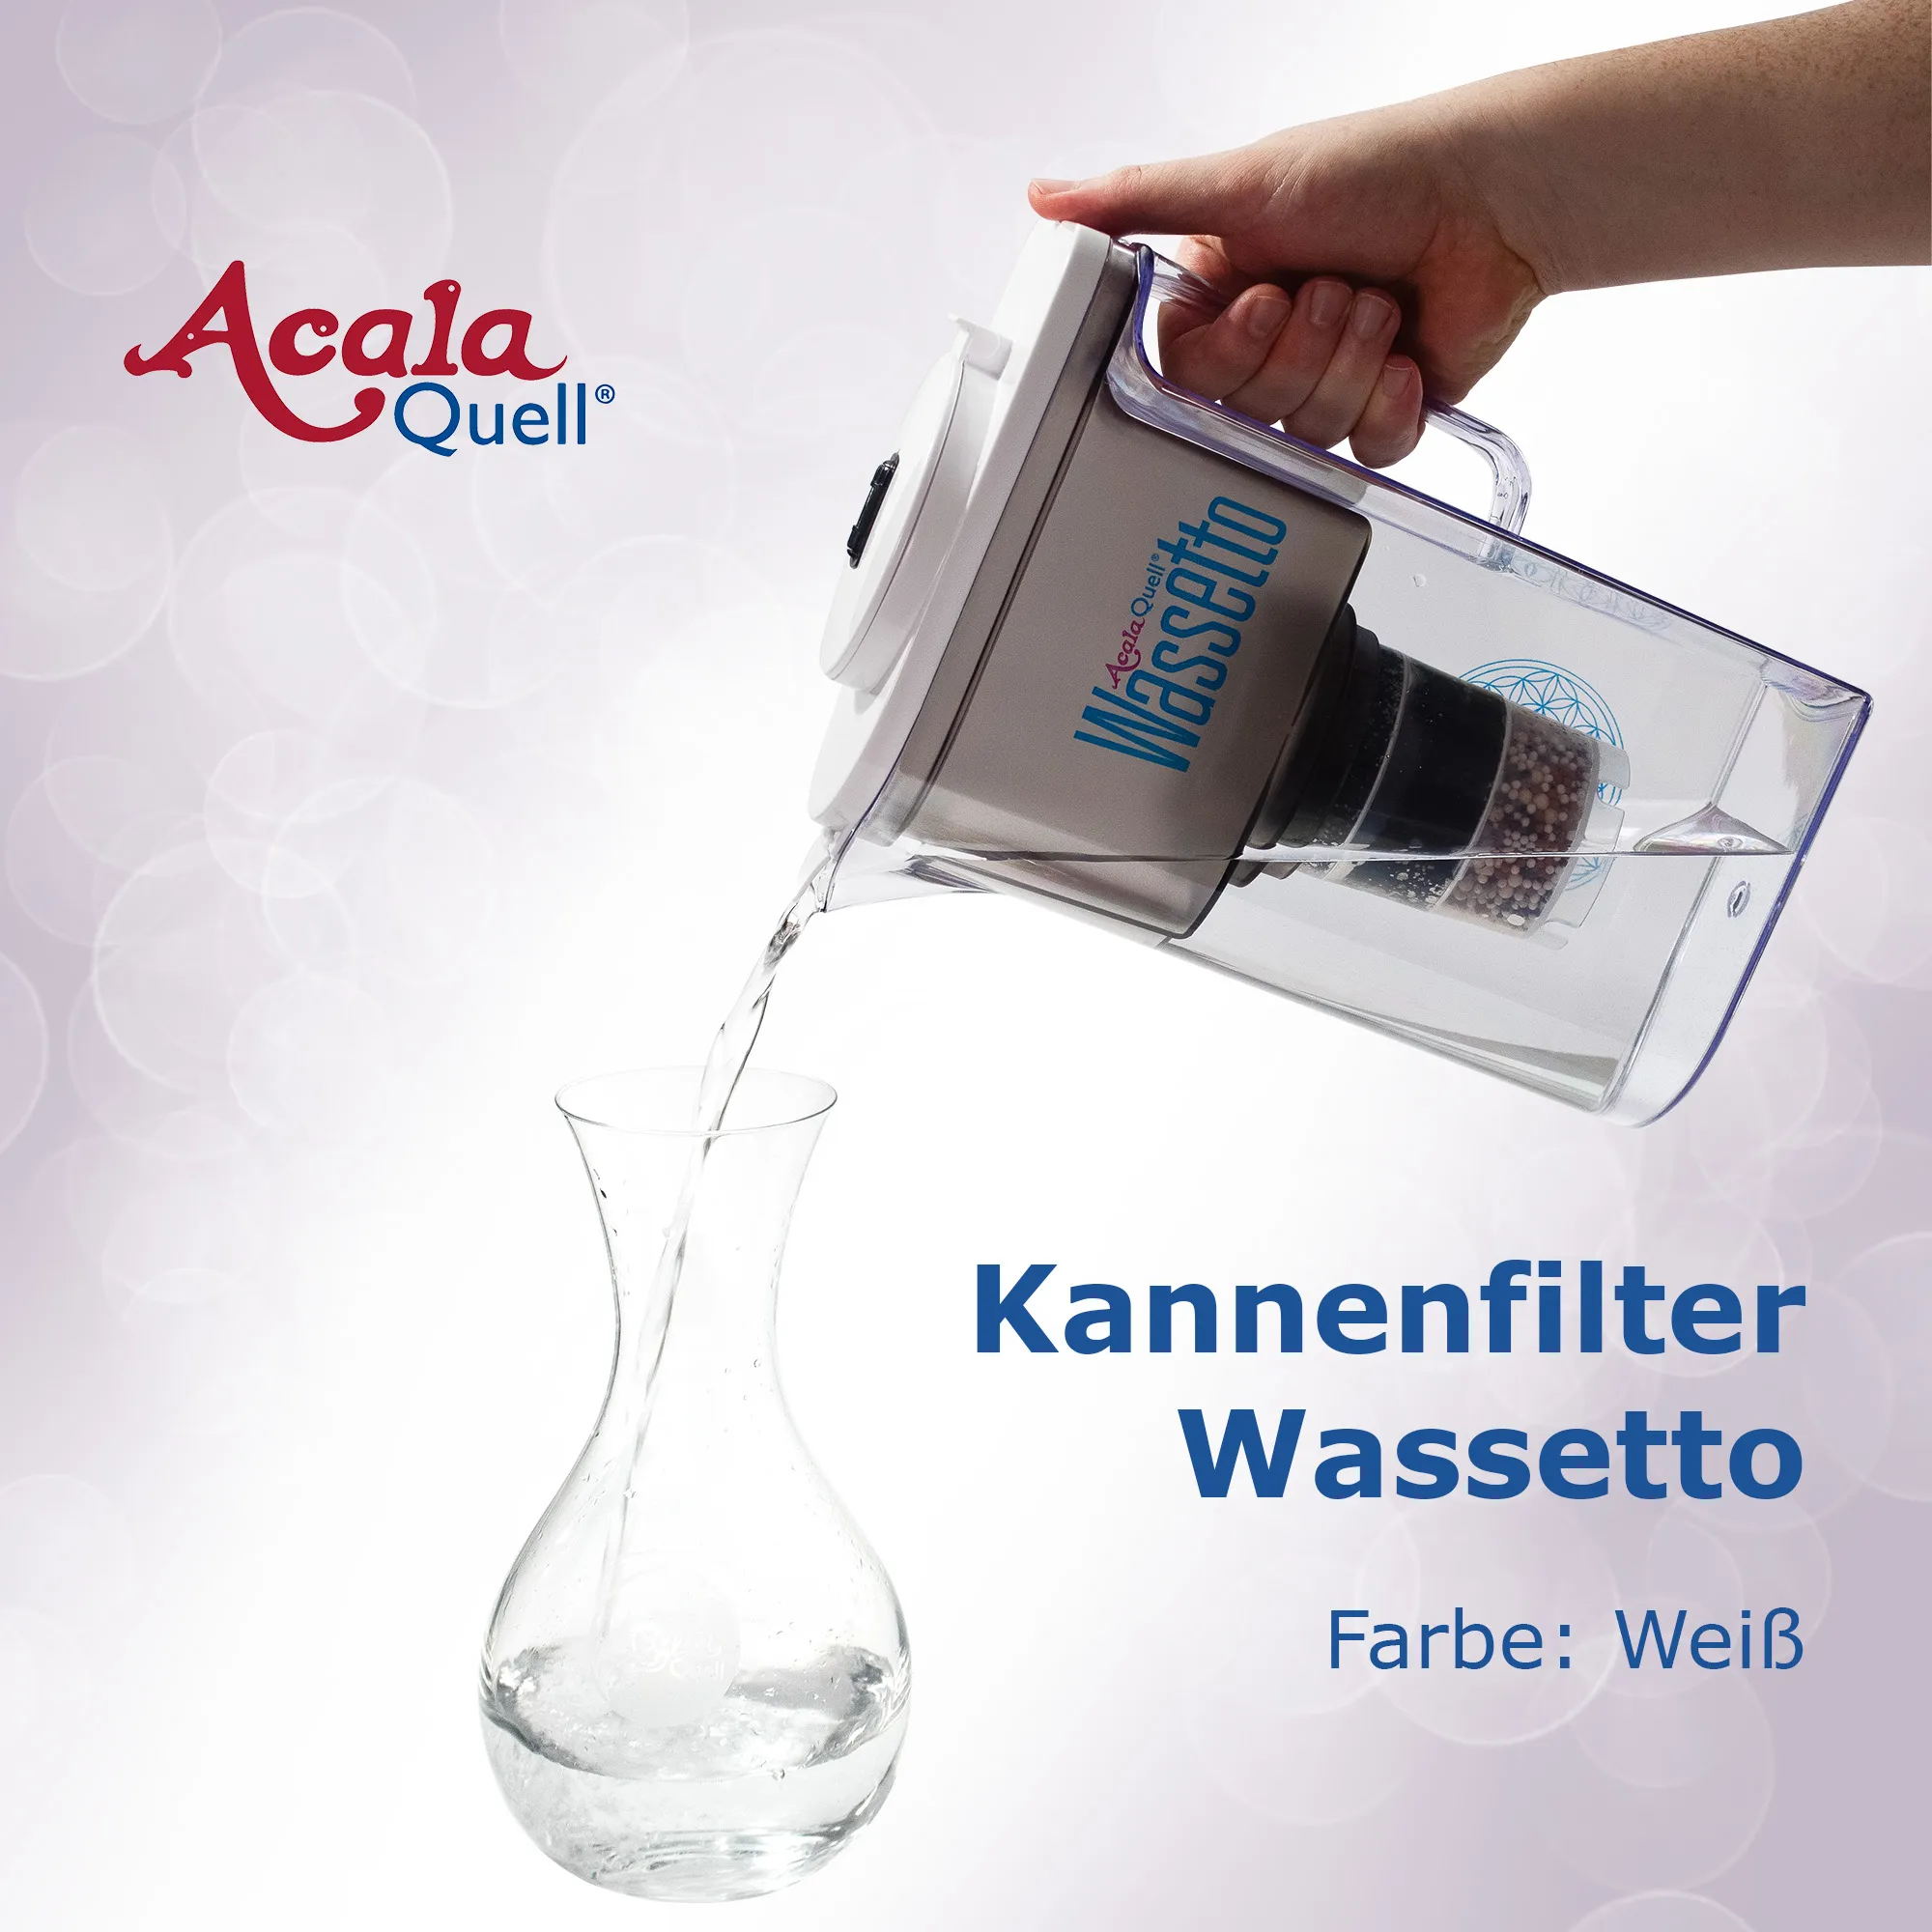 Frisch gefiltertes Wasser wird aus dem Kannenfilter Wassetto in eine Glaskaraffe gegossen